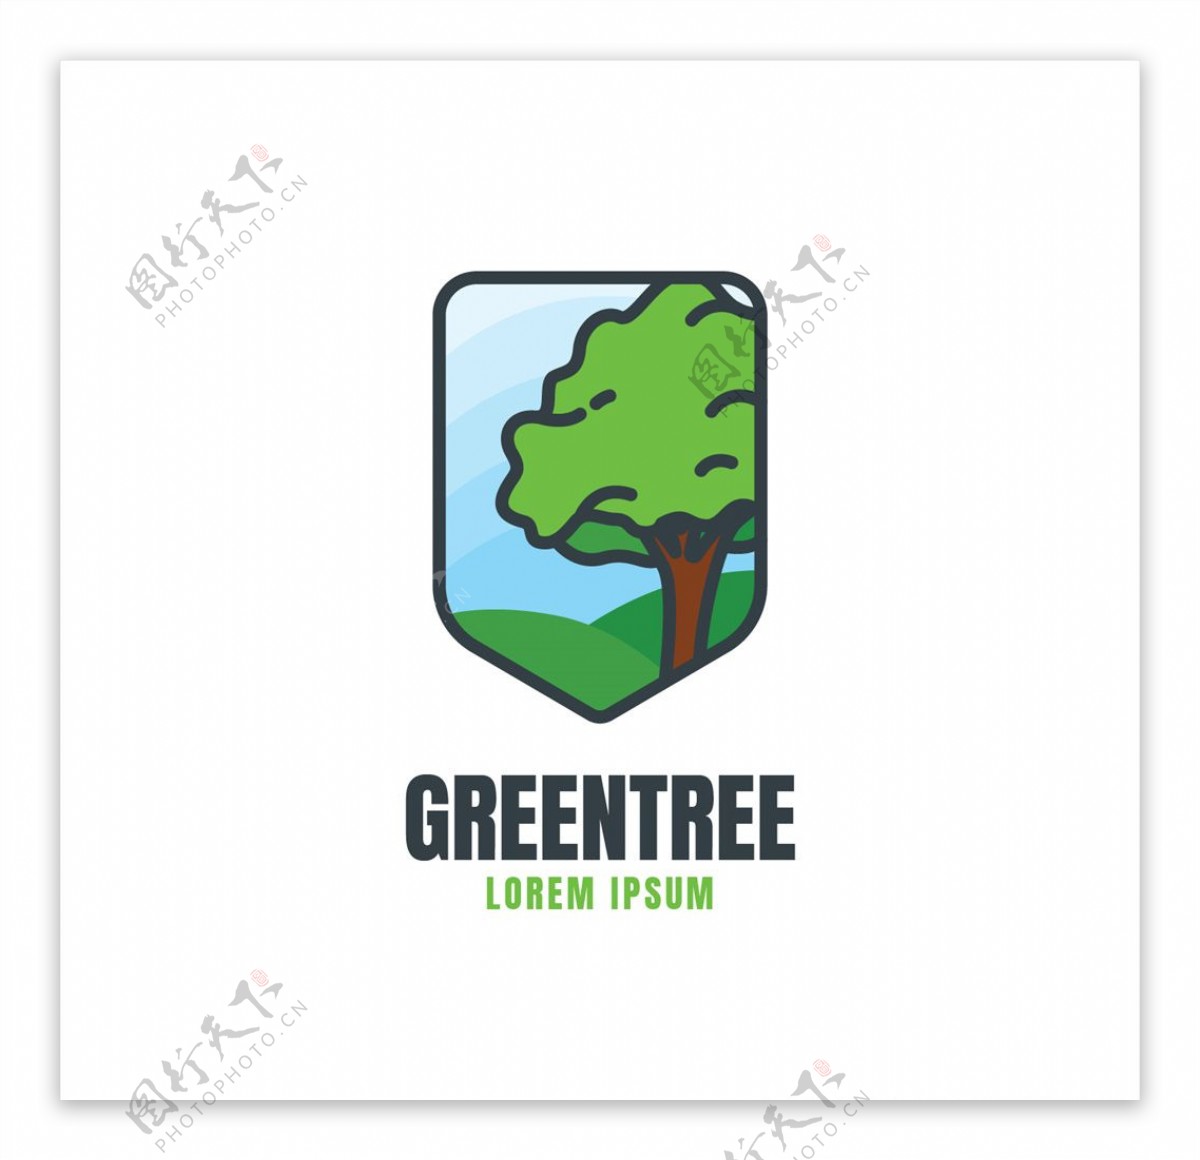 绿树环保图标